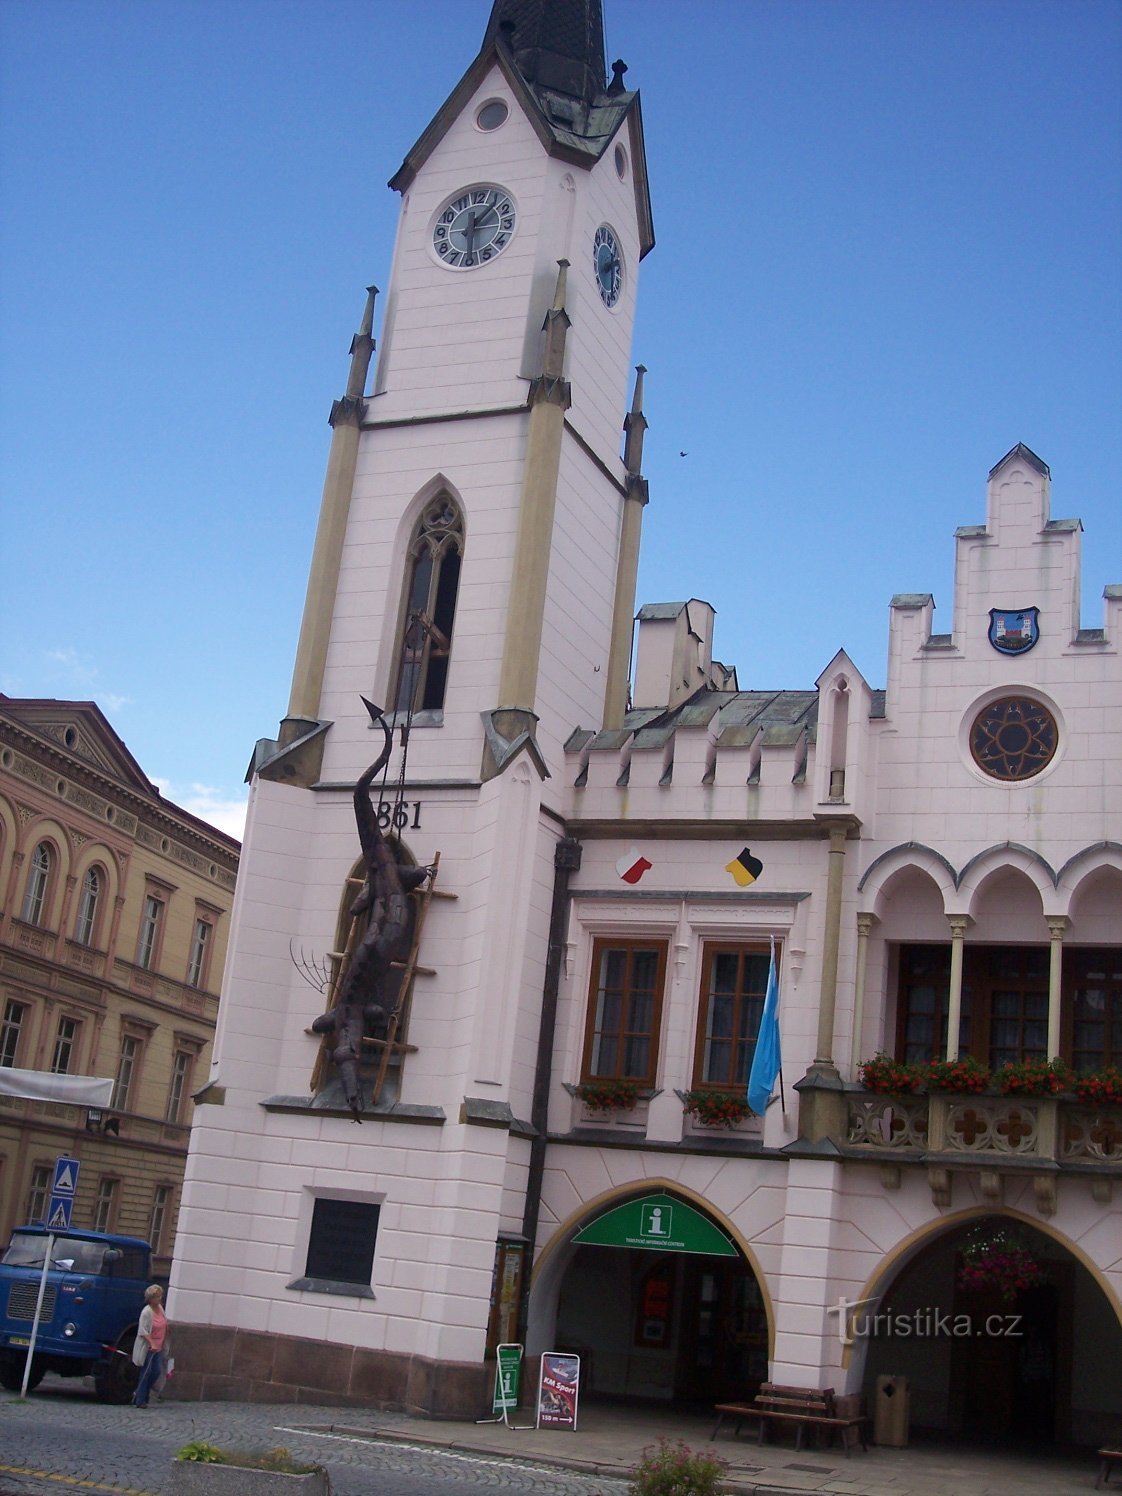 a prefeitura renascentista original do final do século XVI, pseudo-gótica modificada em 16